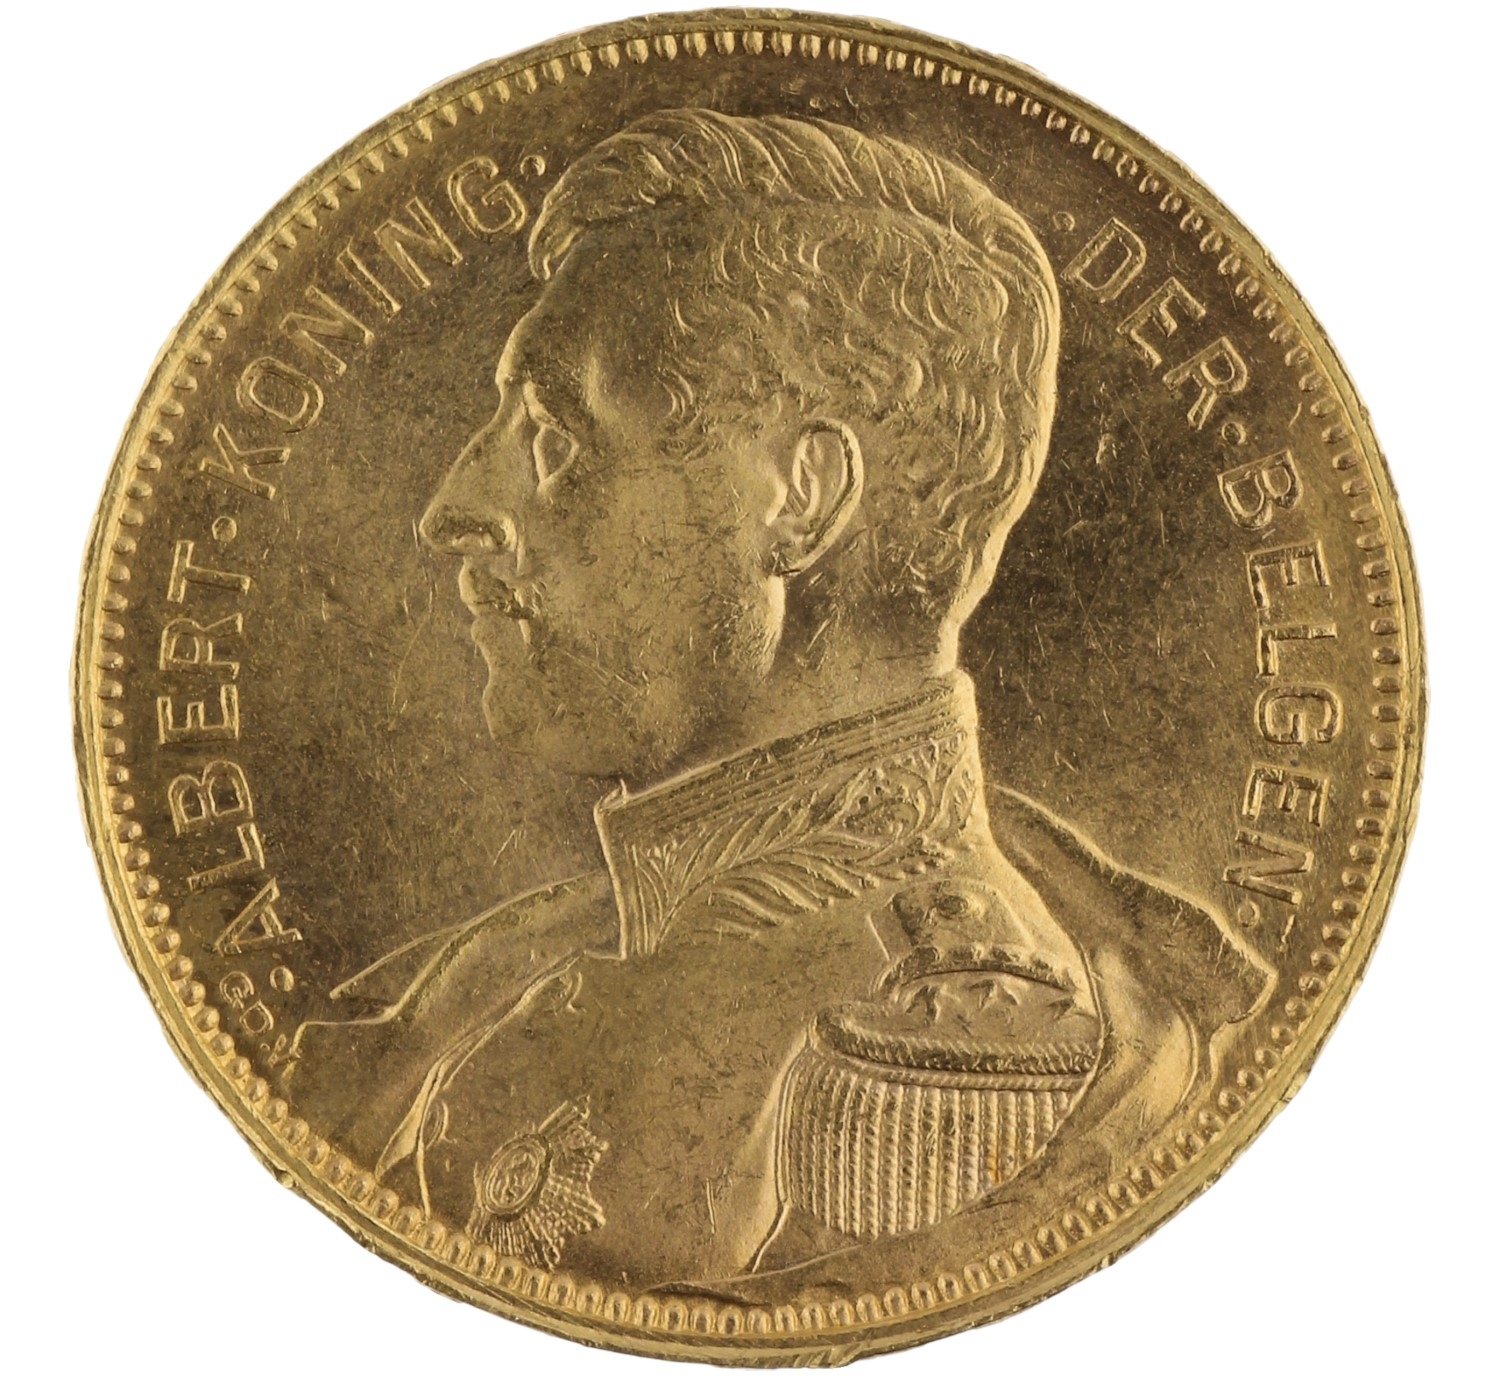 20 Francs - Belgium - 1914